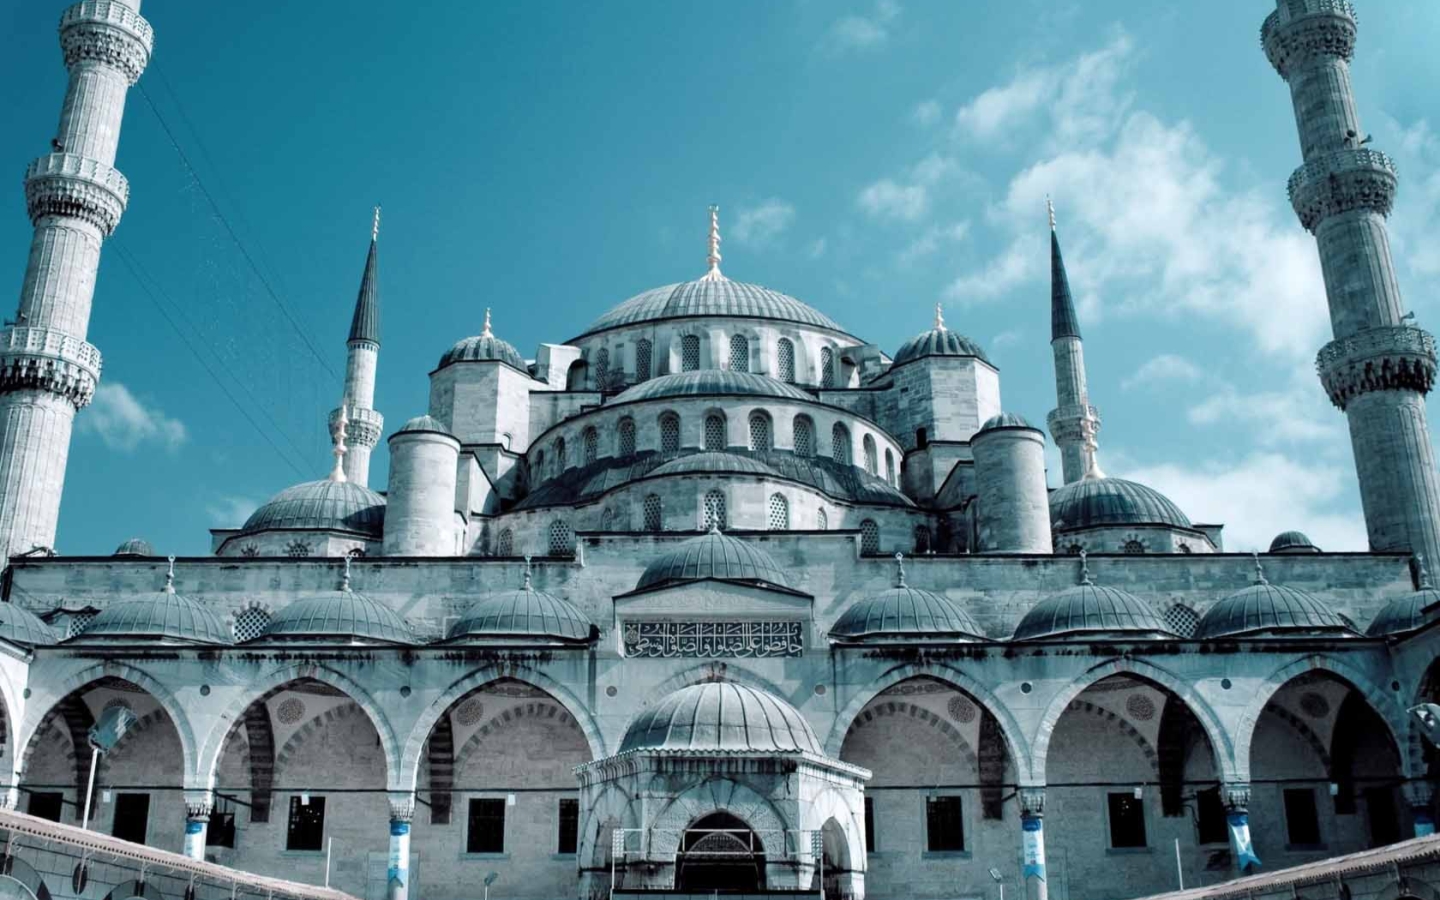 Hình nền Hagia Sophia Istanbul: Những hình nền về tòa thánh Hagia Sophia ở Istanbul sẽ đưa bạn vào một chuyến du hành đầy thú vị. Bạn sẽ được chiêm ngưỡng những tác phẩm kiến trúc độc đáo của thời Trung Cổ, và tận hưởng một không khí hoàn toàn khác biệt. Hãy tải xuống hình nền Hagia Sophia Istanbul của chúng tôi để trang trí cho máy tính của bạn.